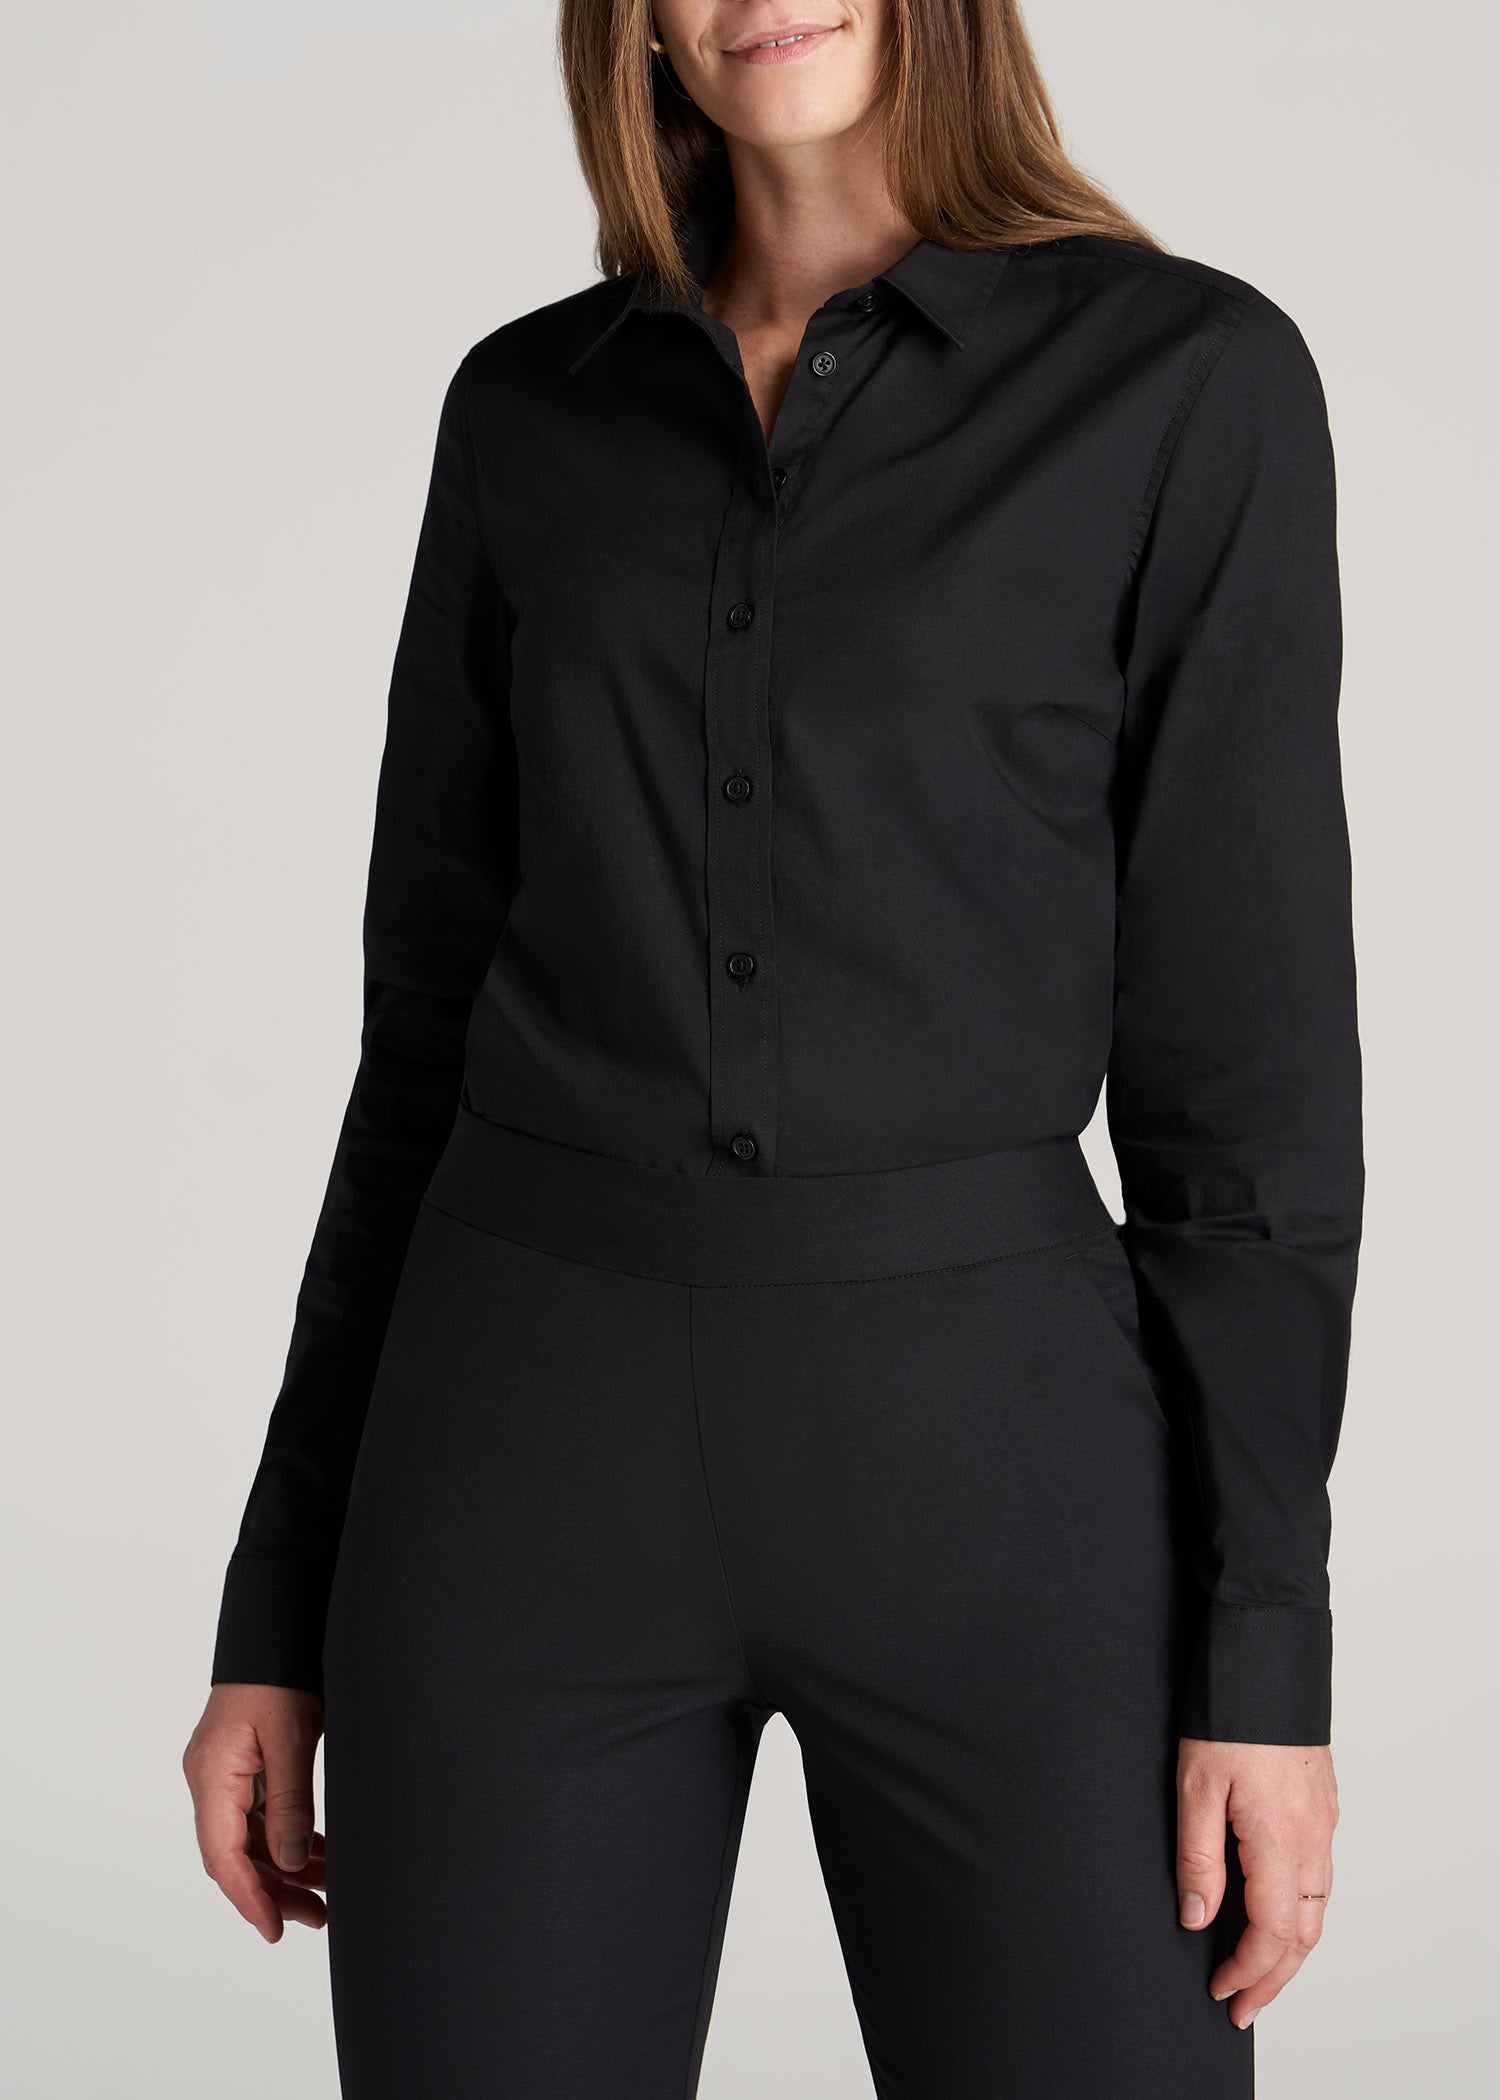 Women's Tall Button-Up Dress Shirt Black